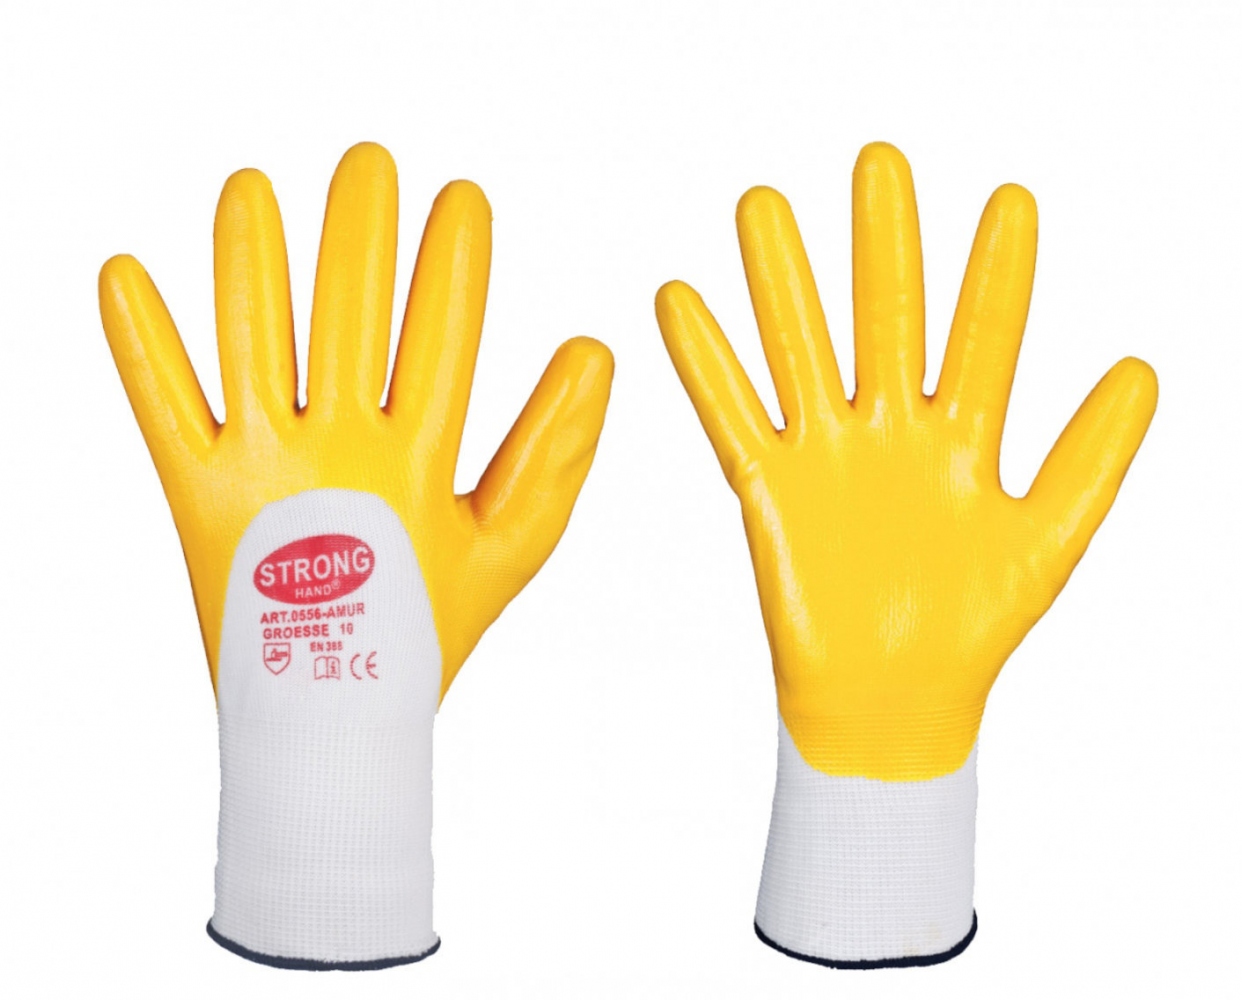 pics/Feldtmann 2016/Handschutz/google/stronghand-0556-amur-nitrile-coated-polyester-working-gloves2.jpg